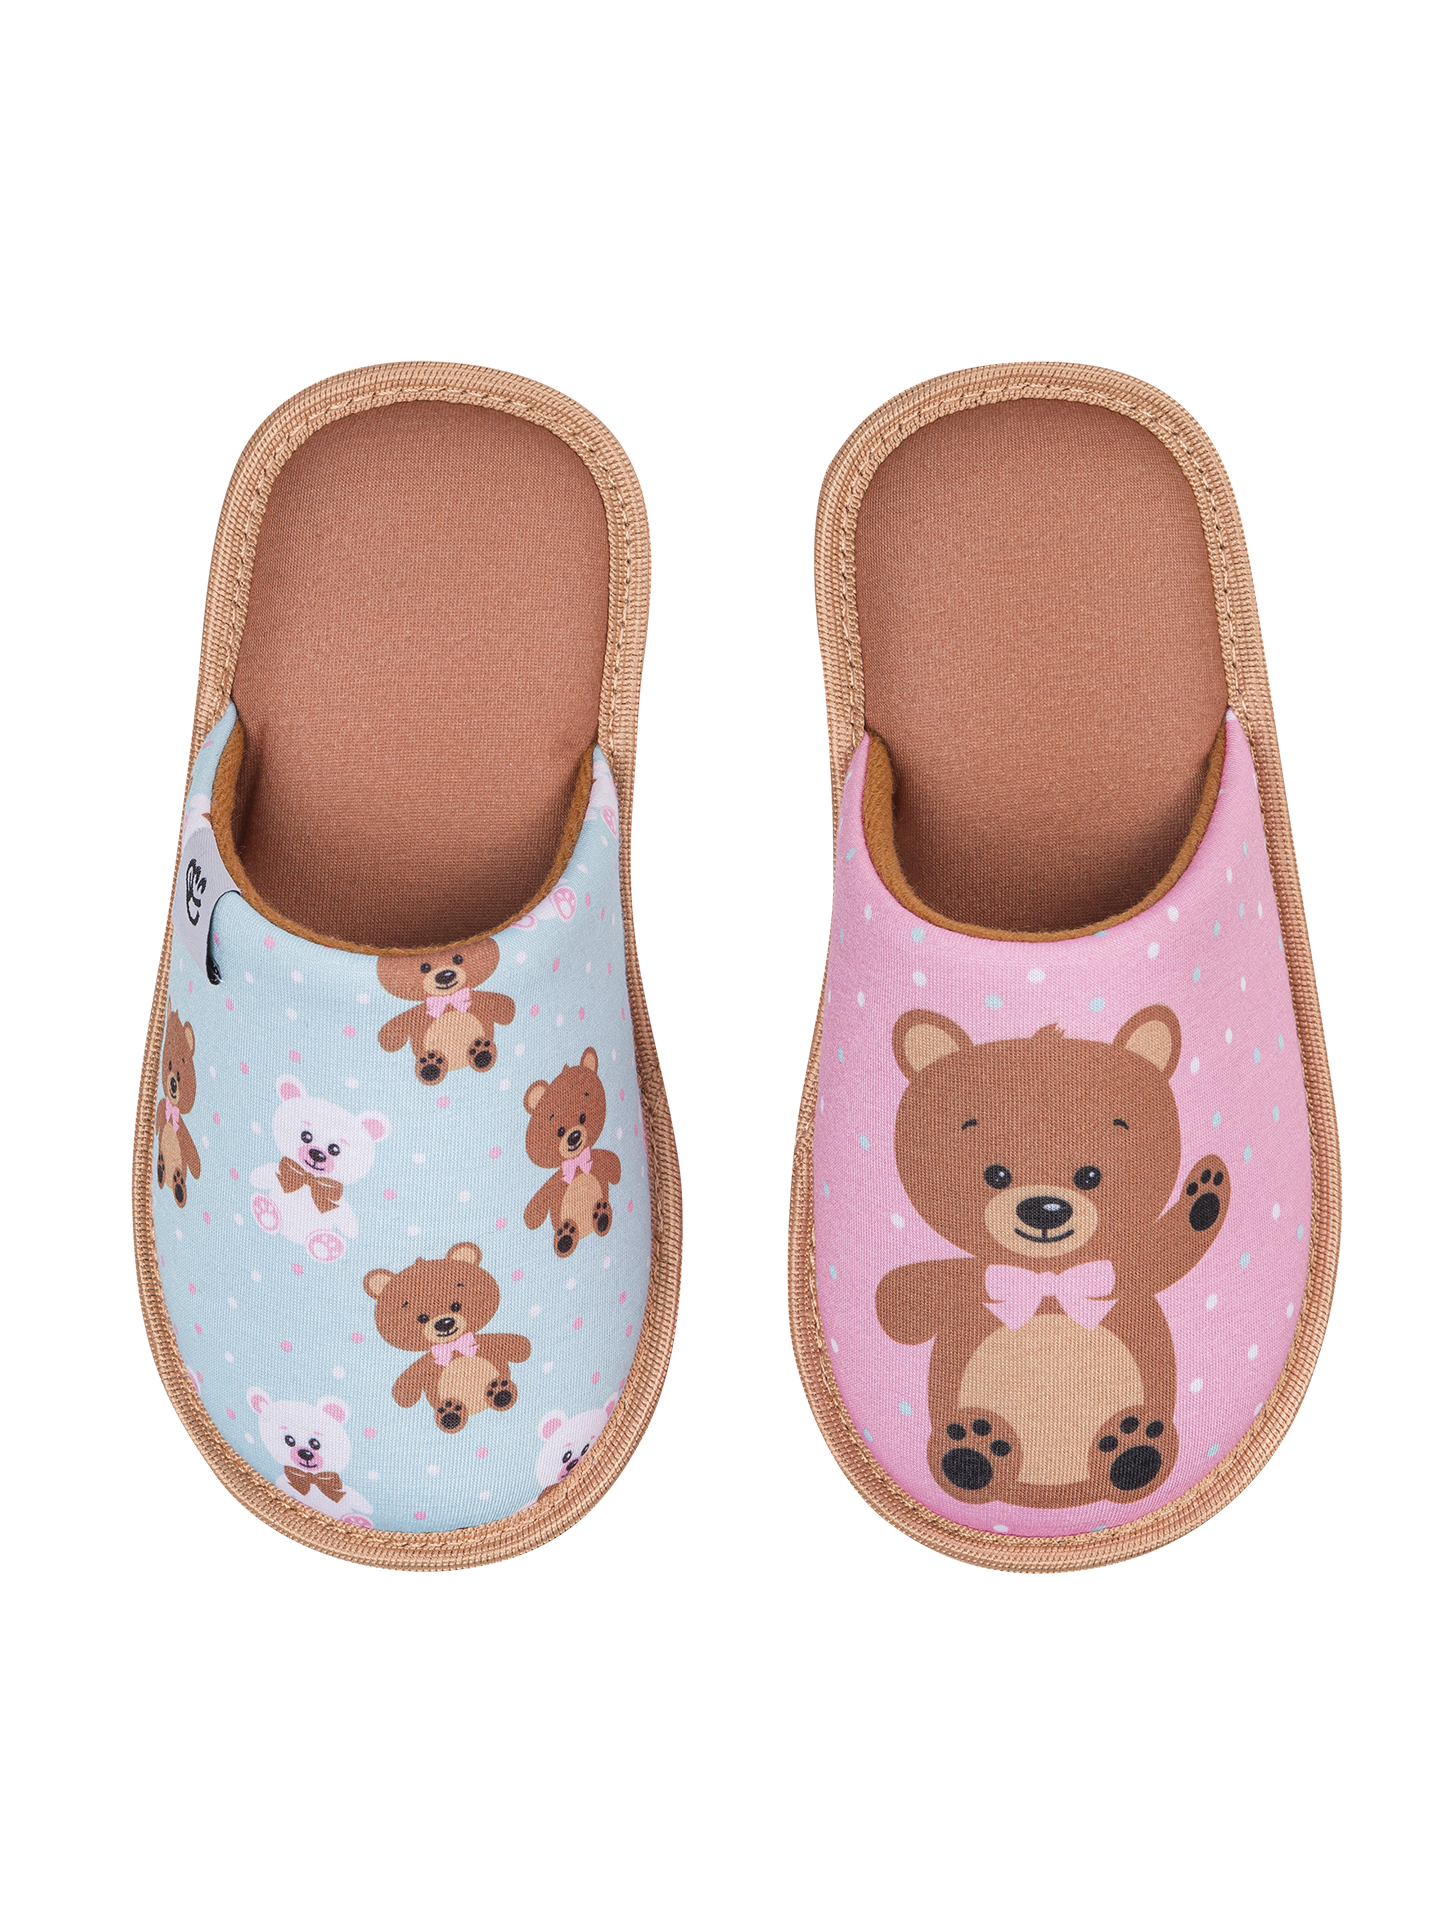 Kids' Slippers Teddy Bear